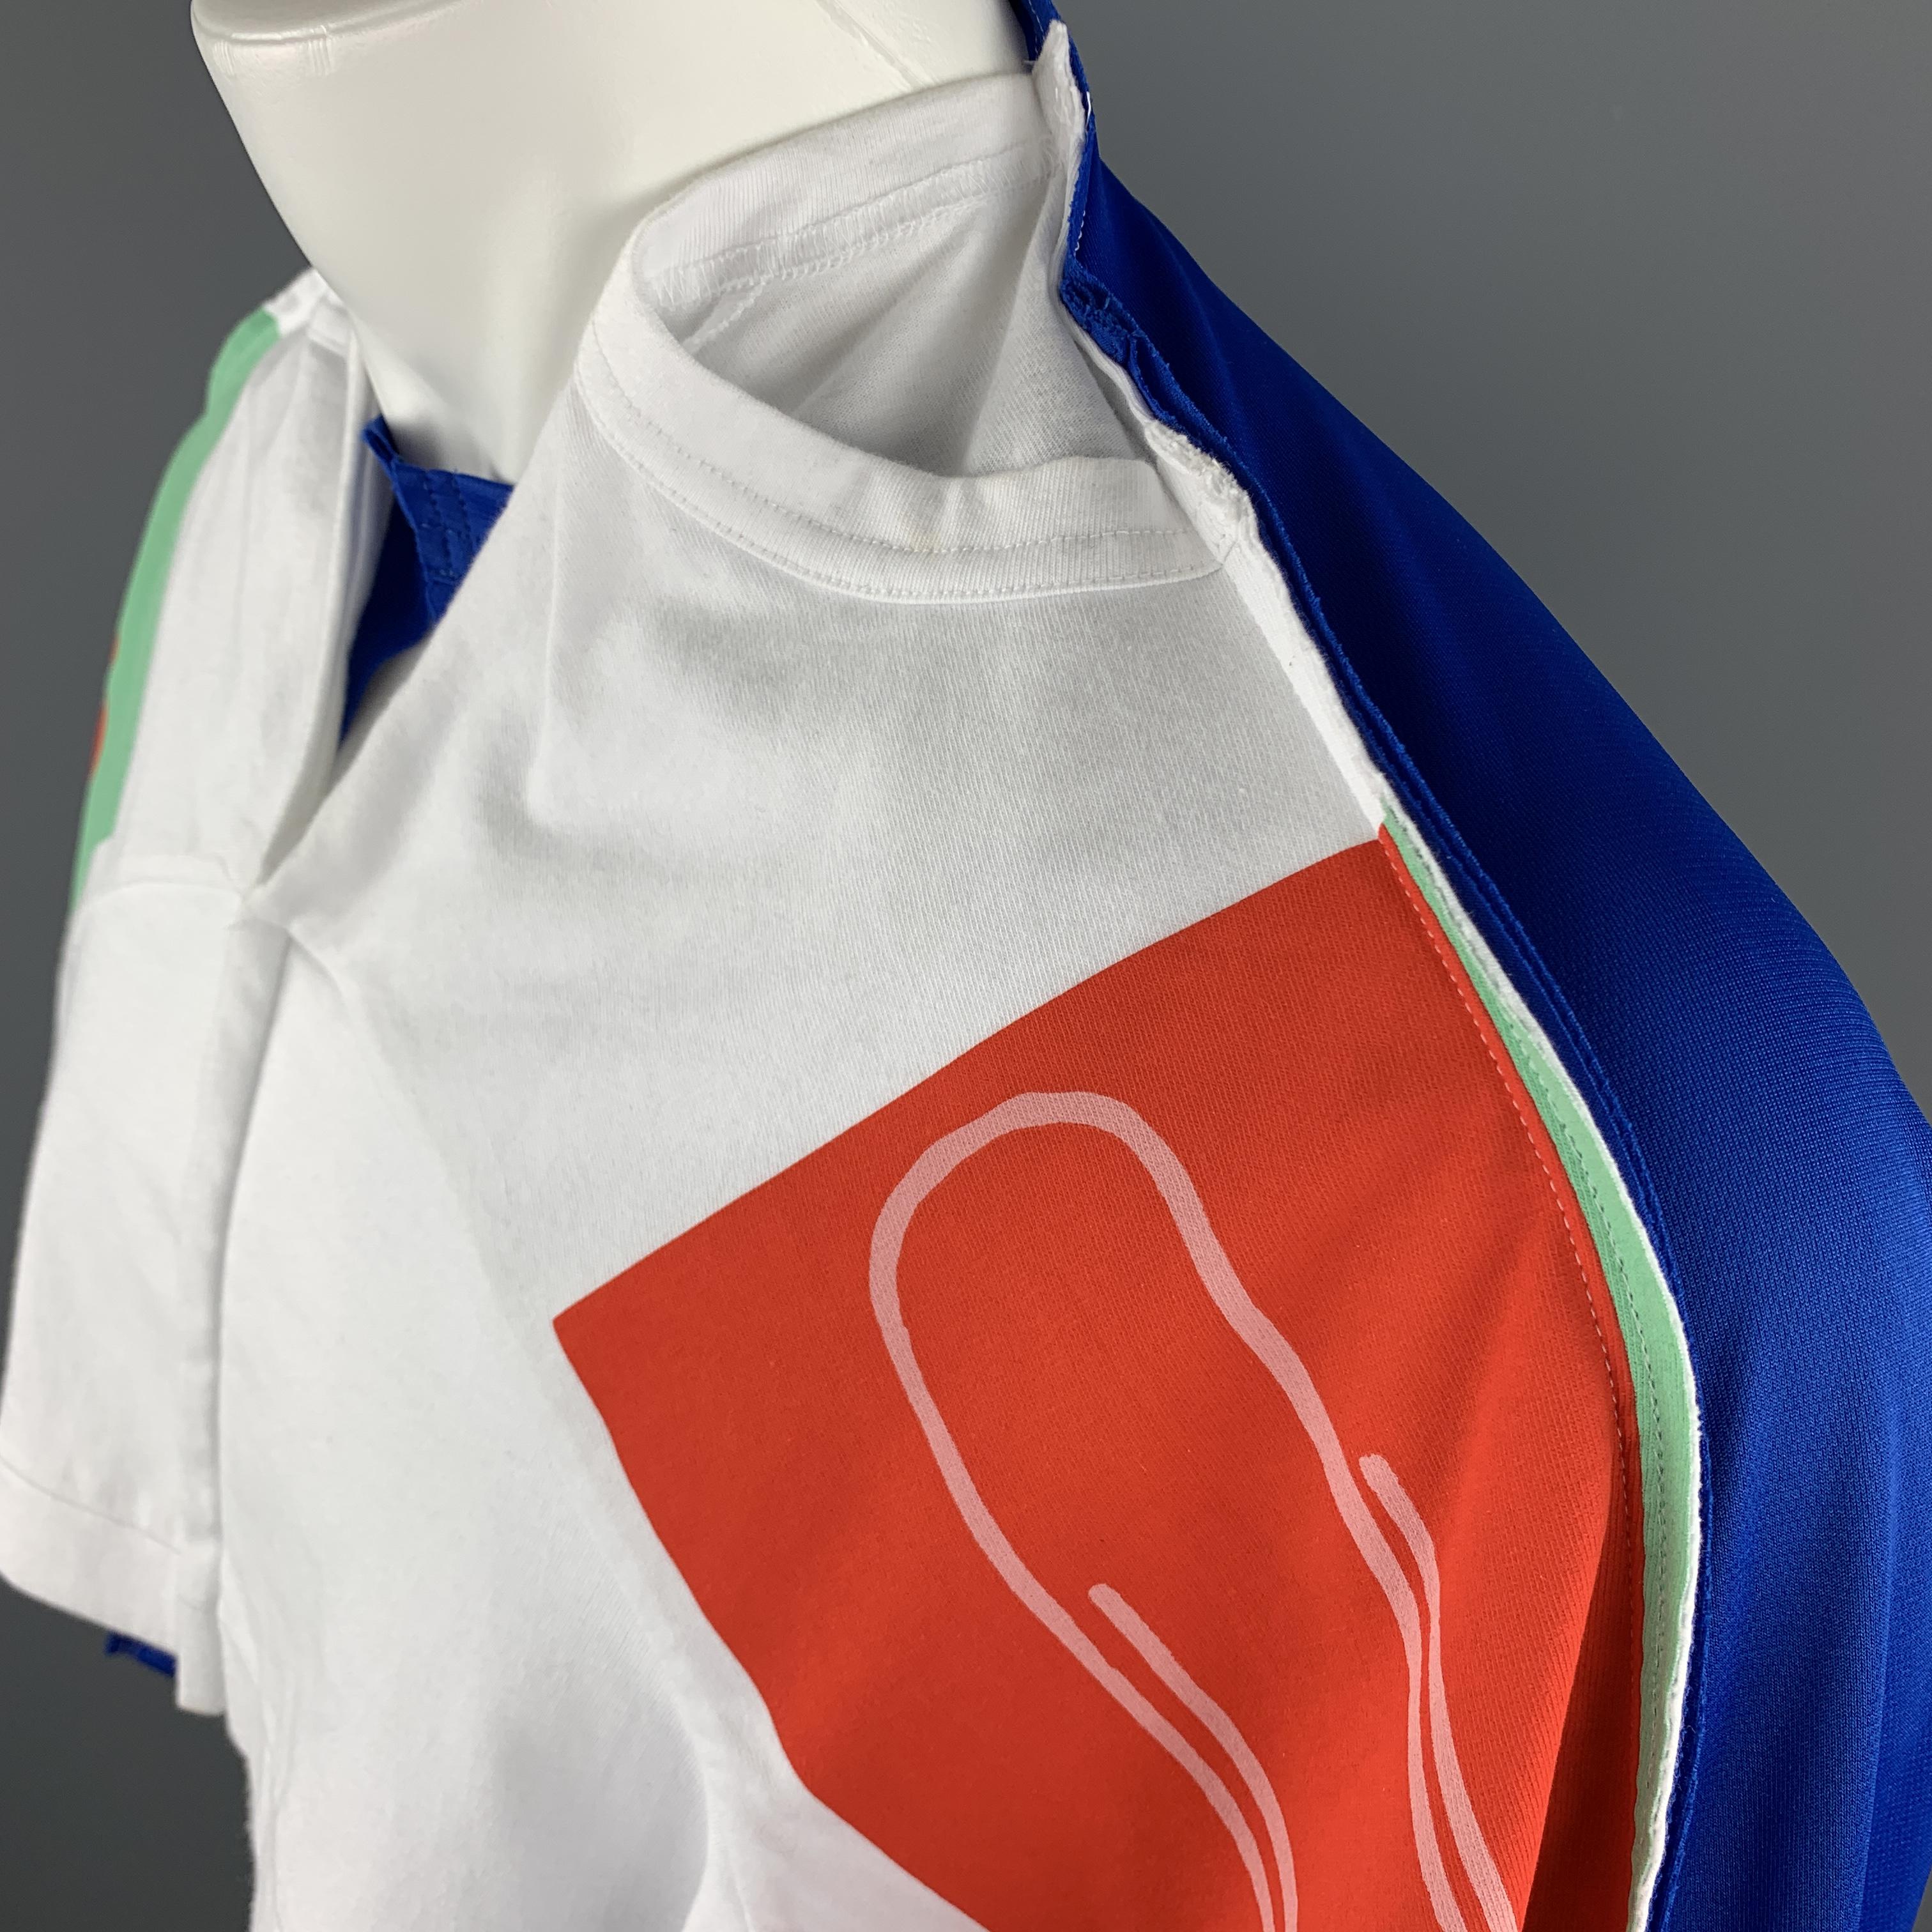 Gray COMME des GARCONS HOMME PLUS S/S 2019 Size S White & Blue Graphic T-Shirt